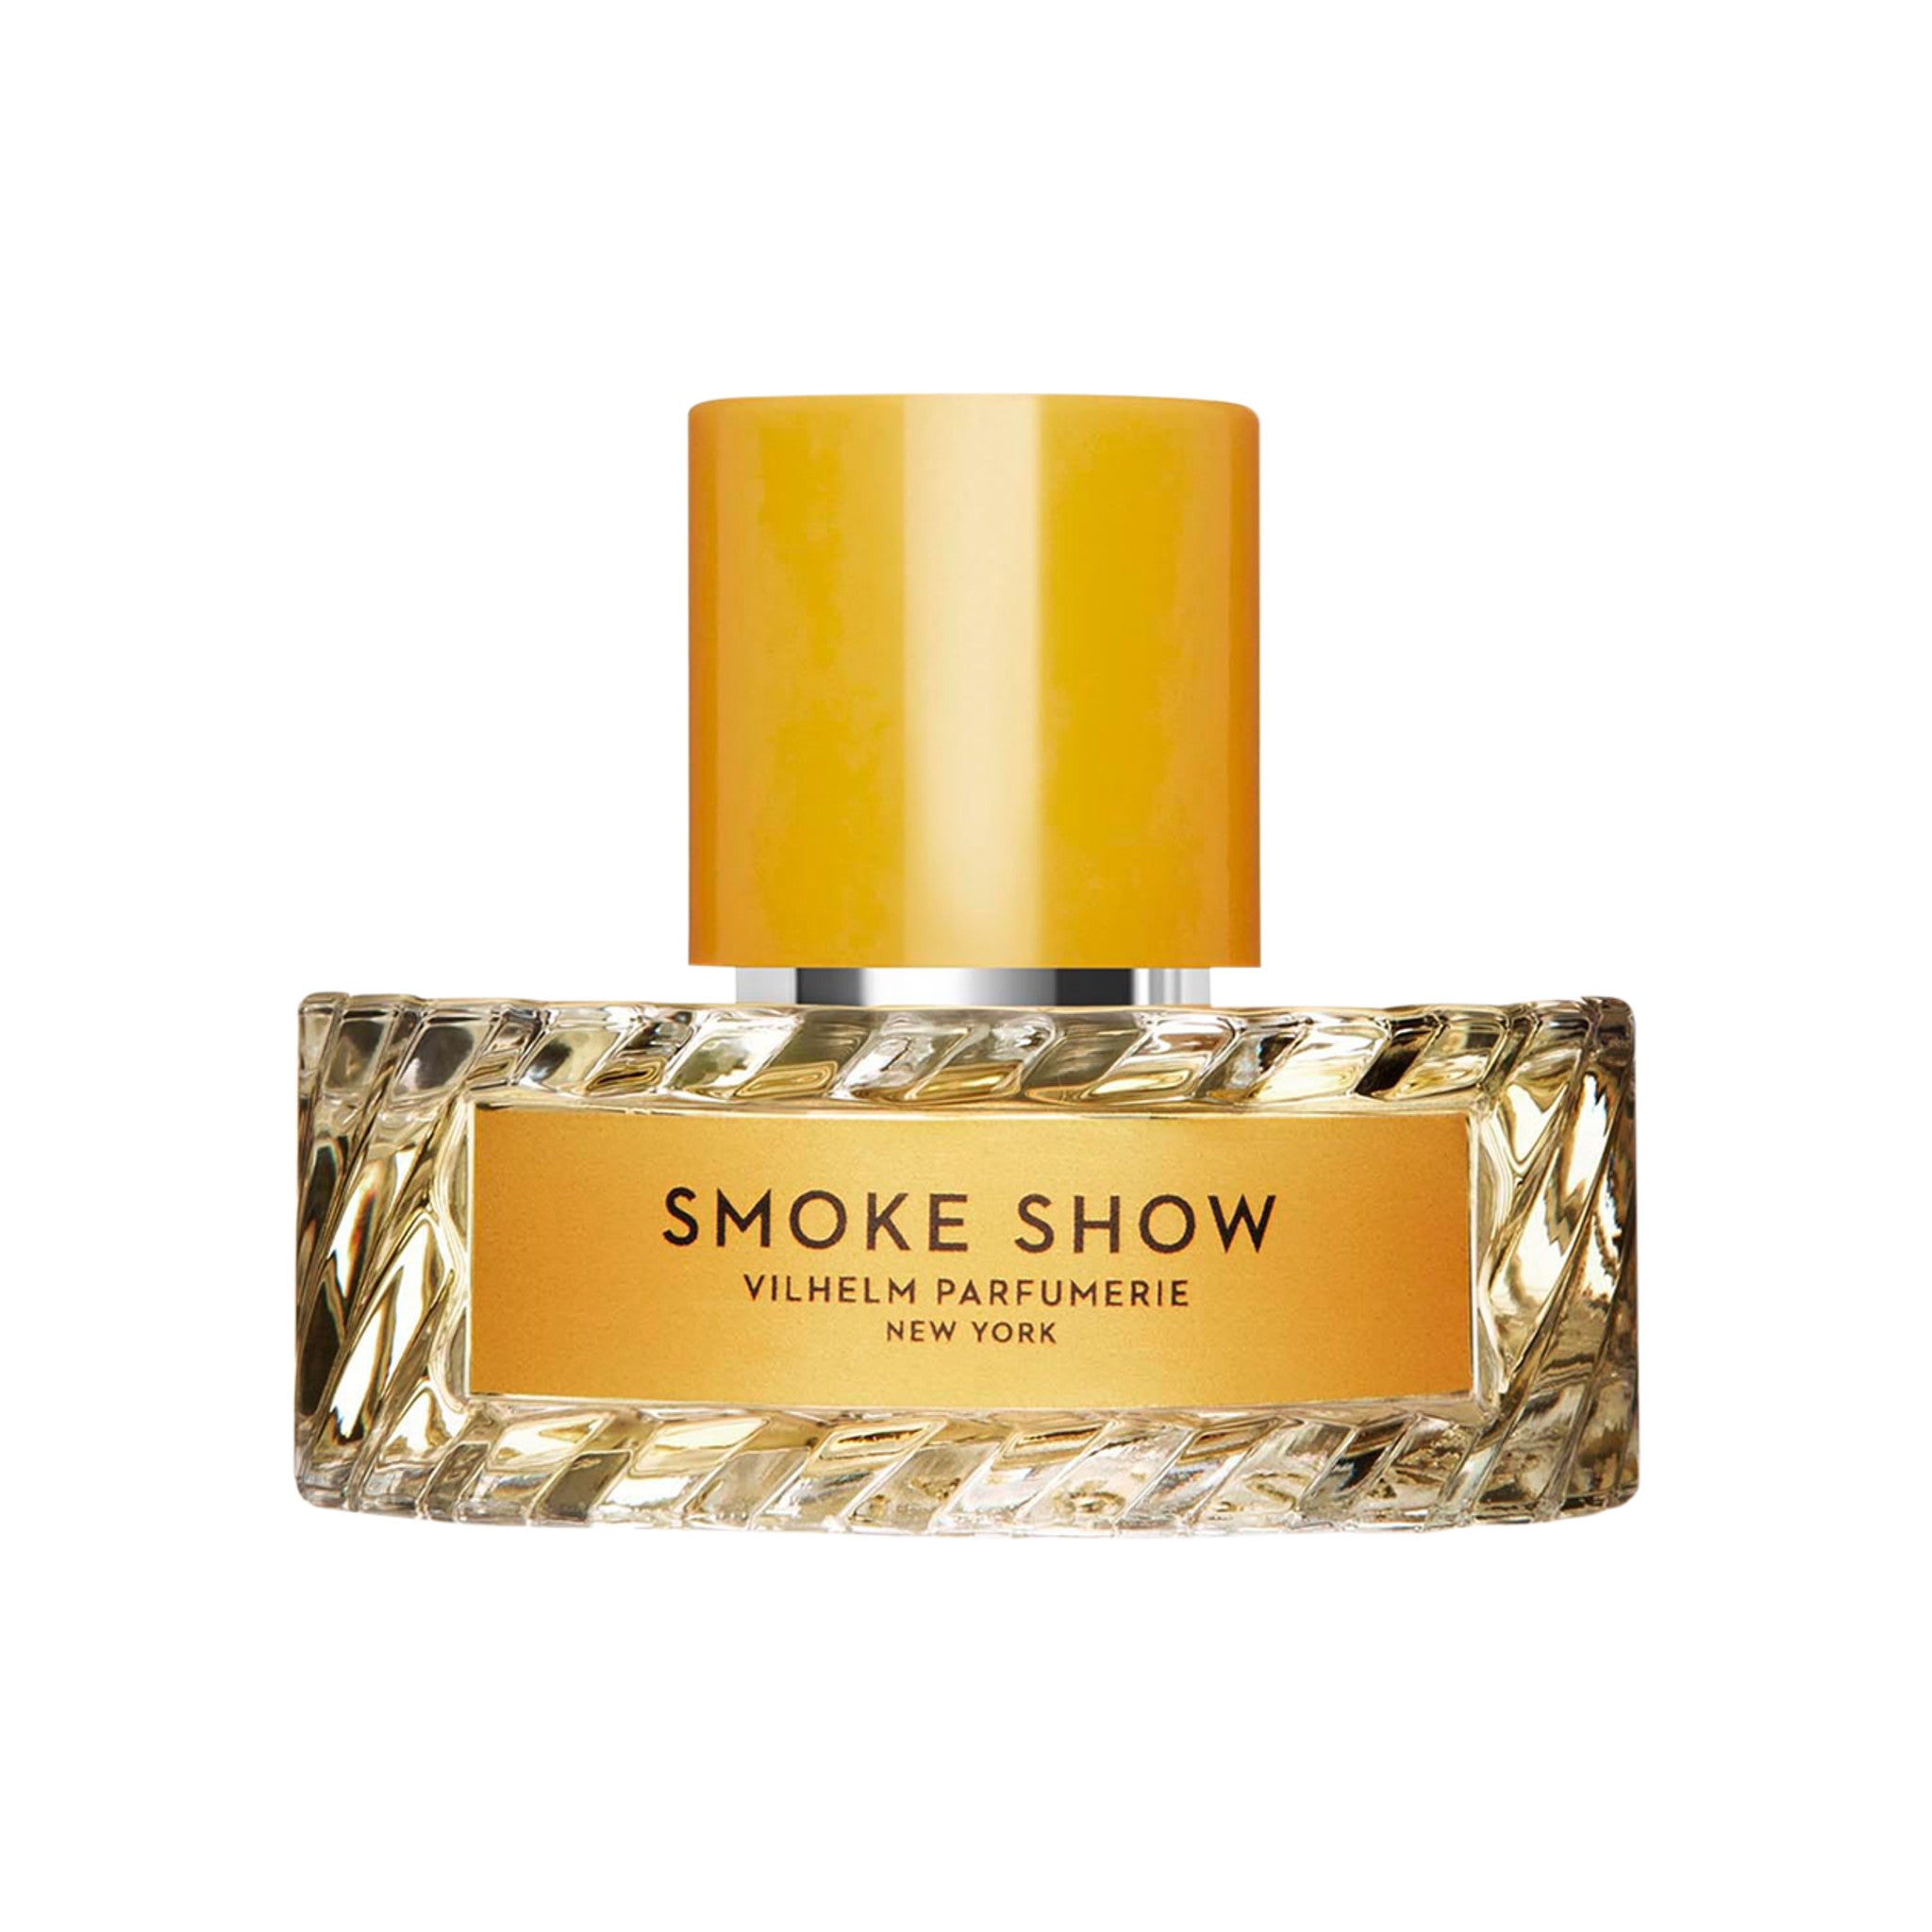 Vilhelm Parfumerie Smoke Show Eau de Parfum Size variant: 50 ml main image.